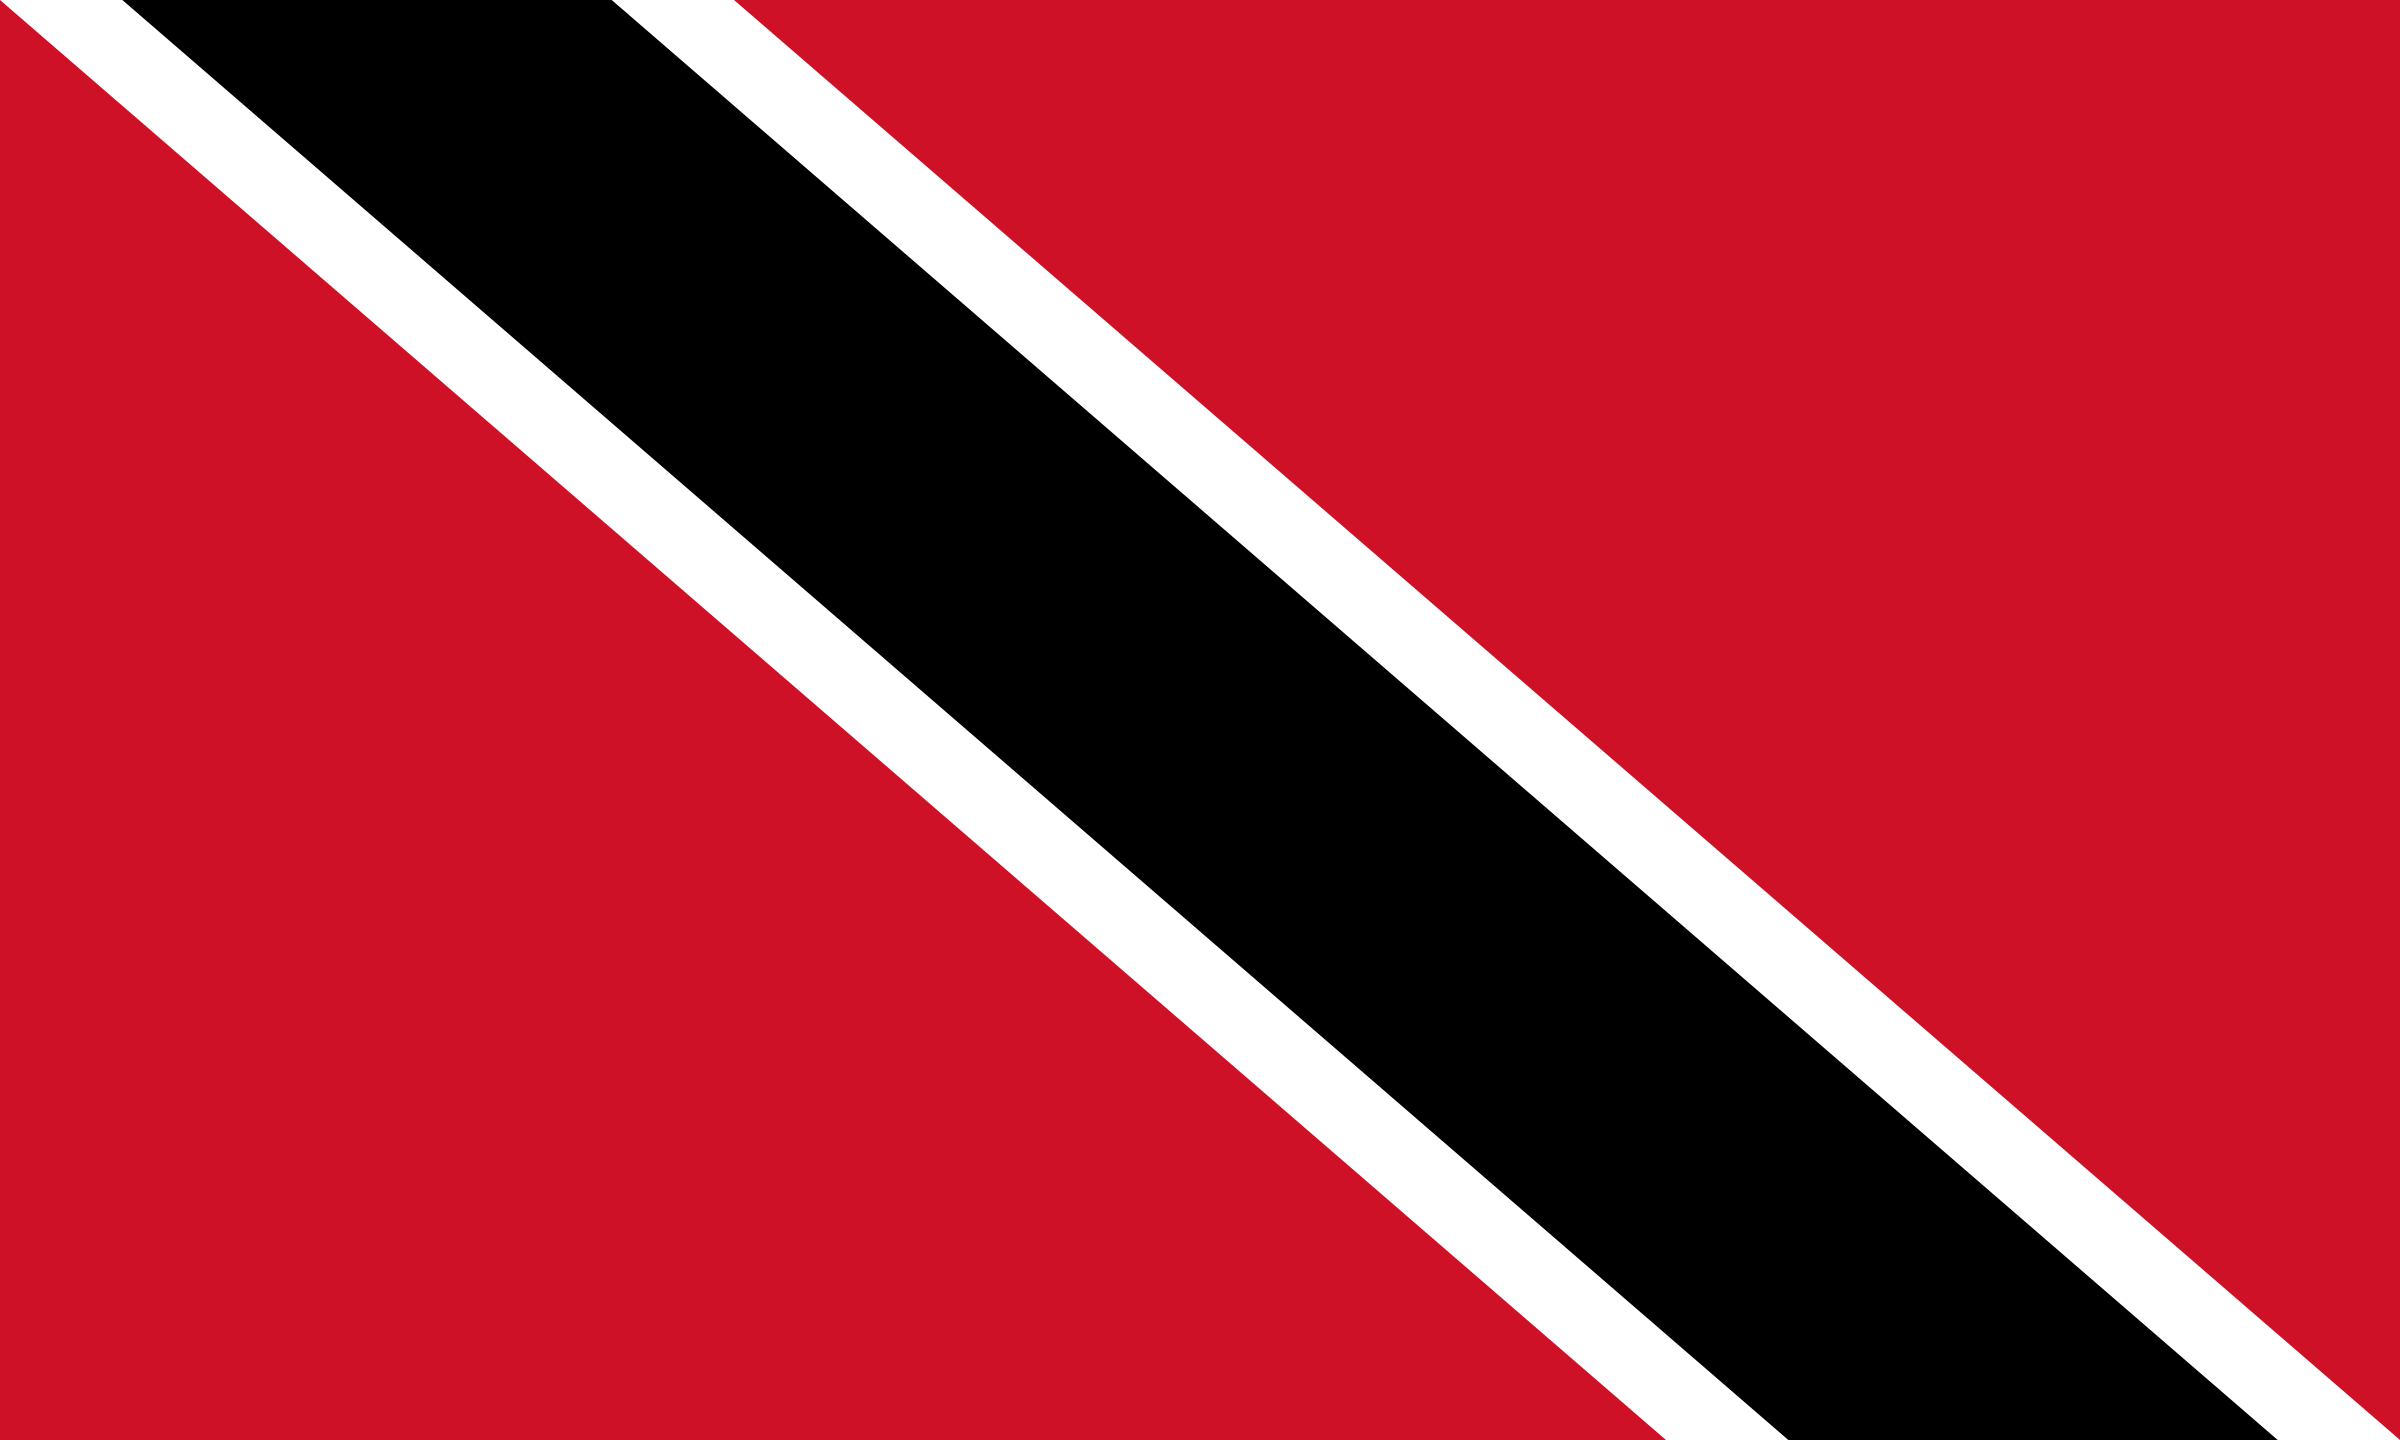 پرچم ترینیداد و توباگو